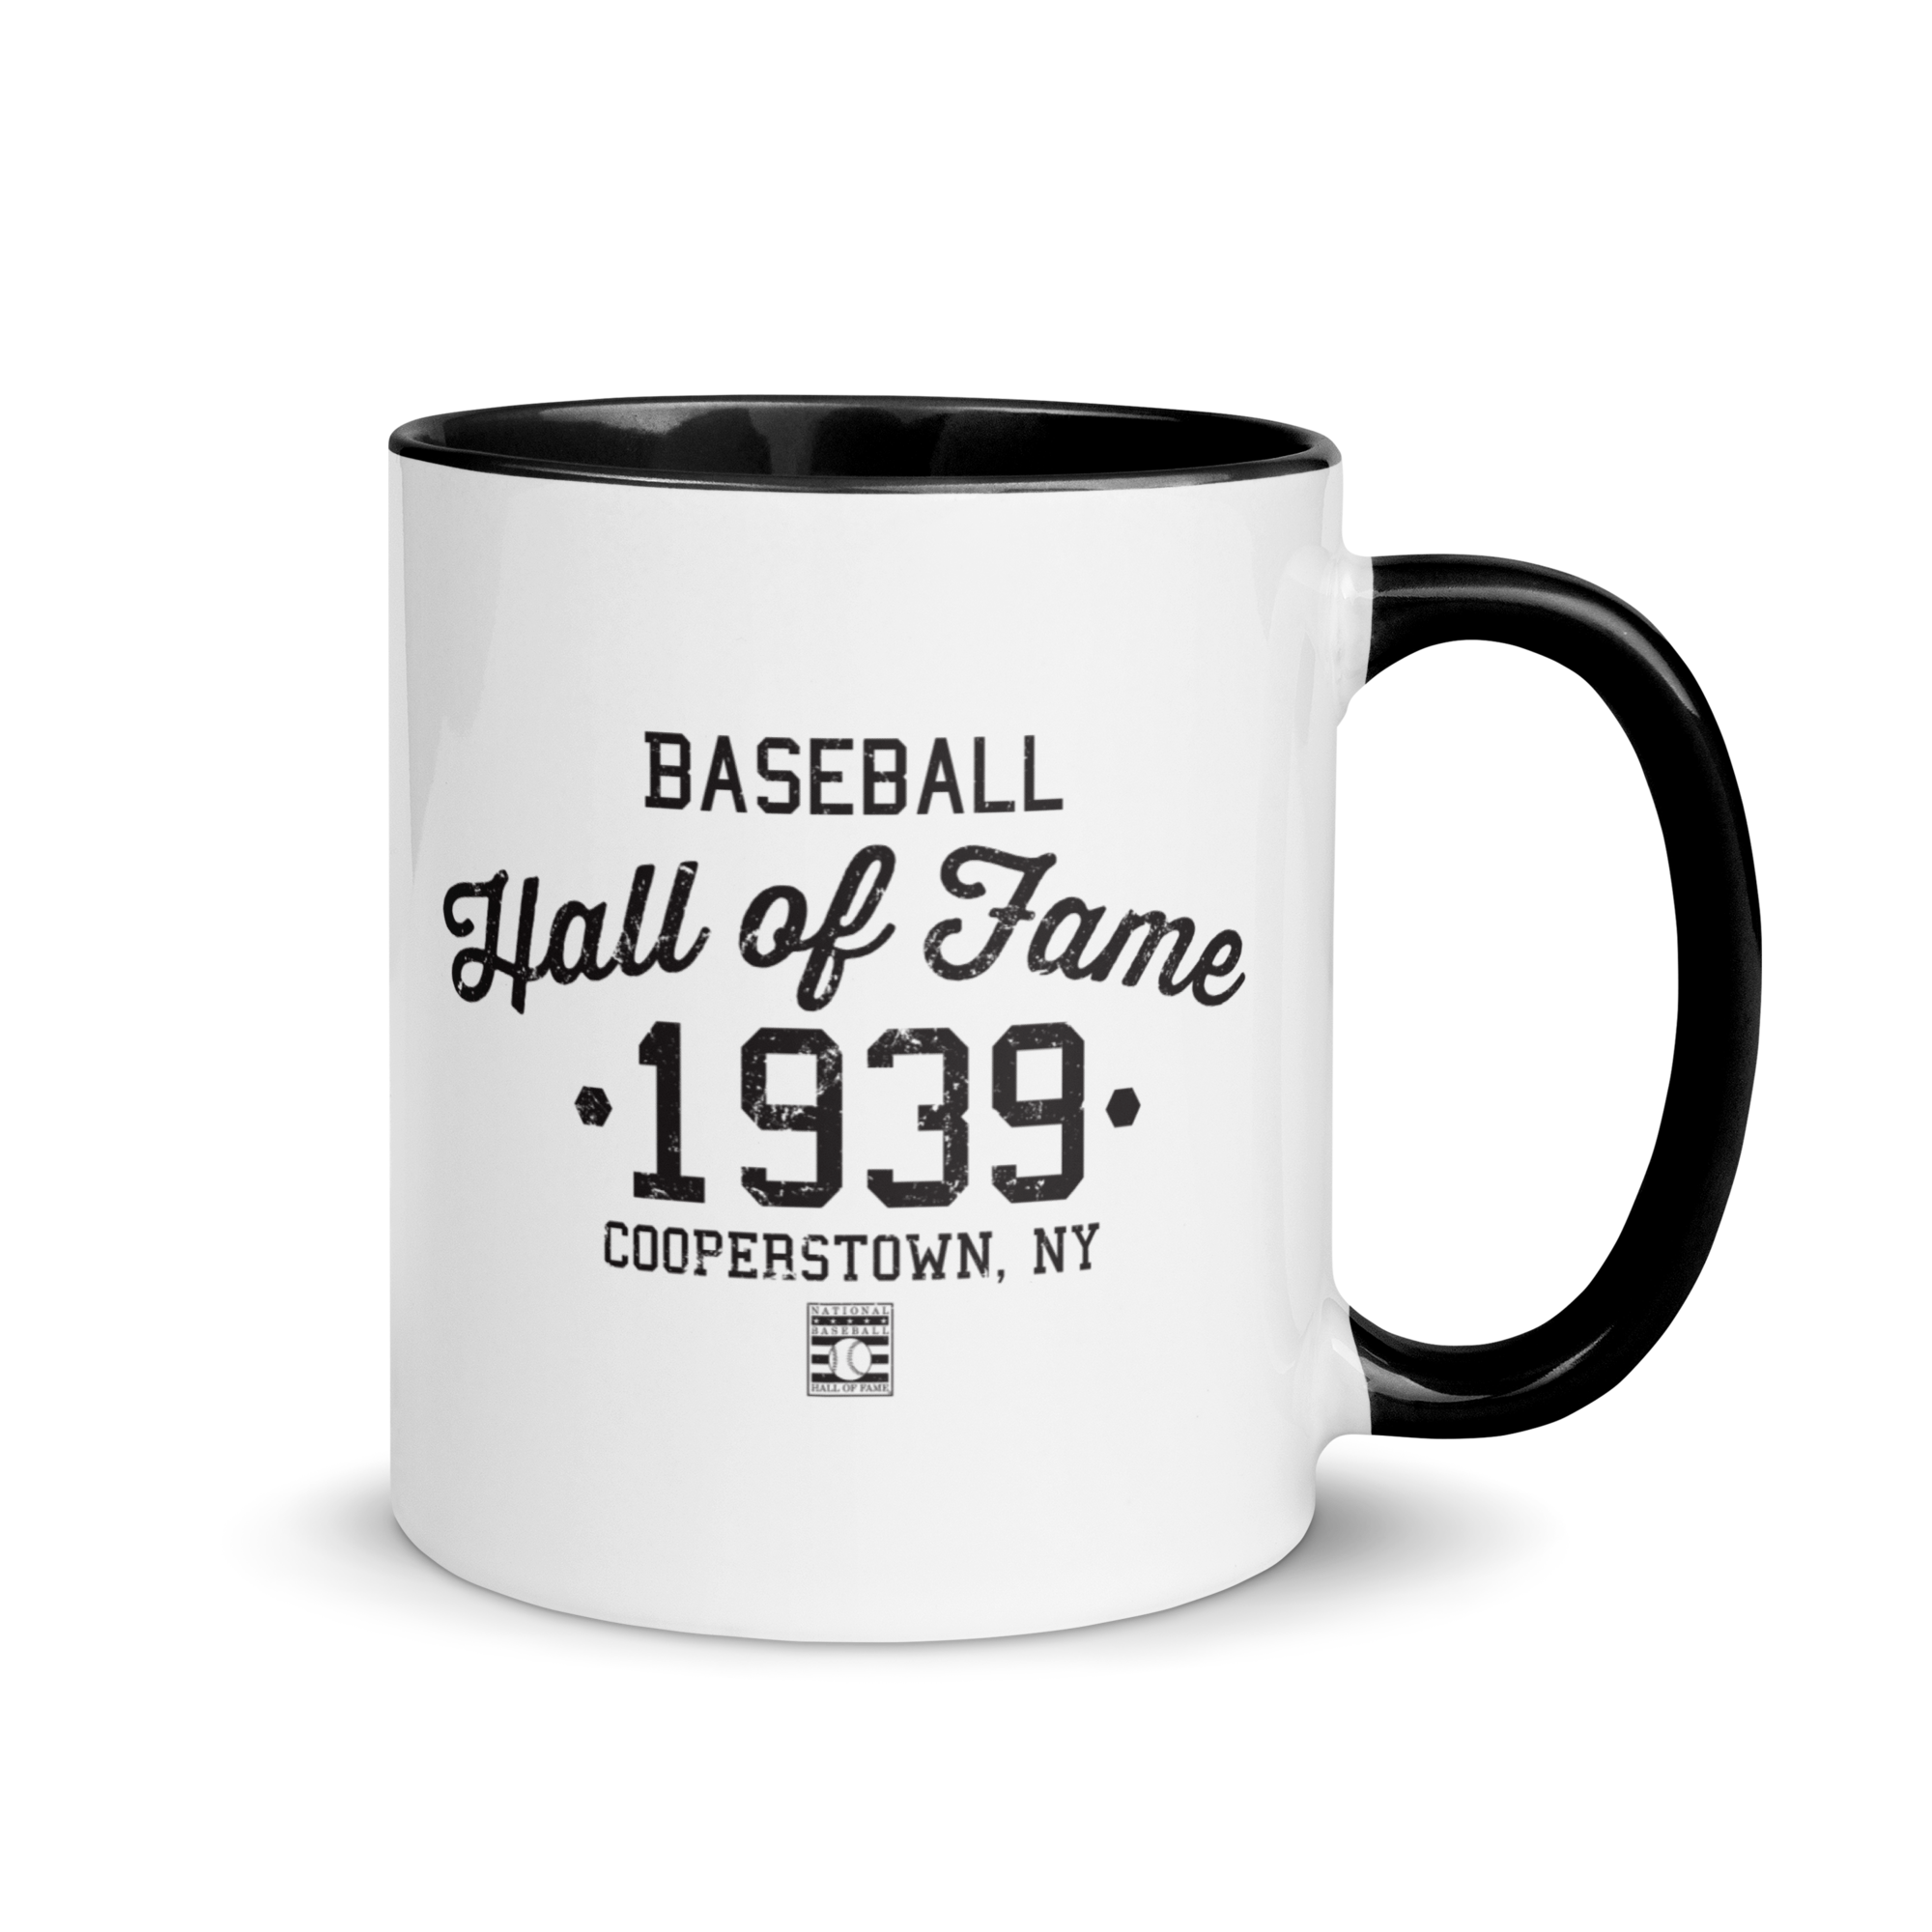 Baseball Hall of Fame - Est 1939 - 11oz. Mug Black interior and Handle